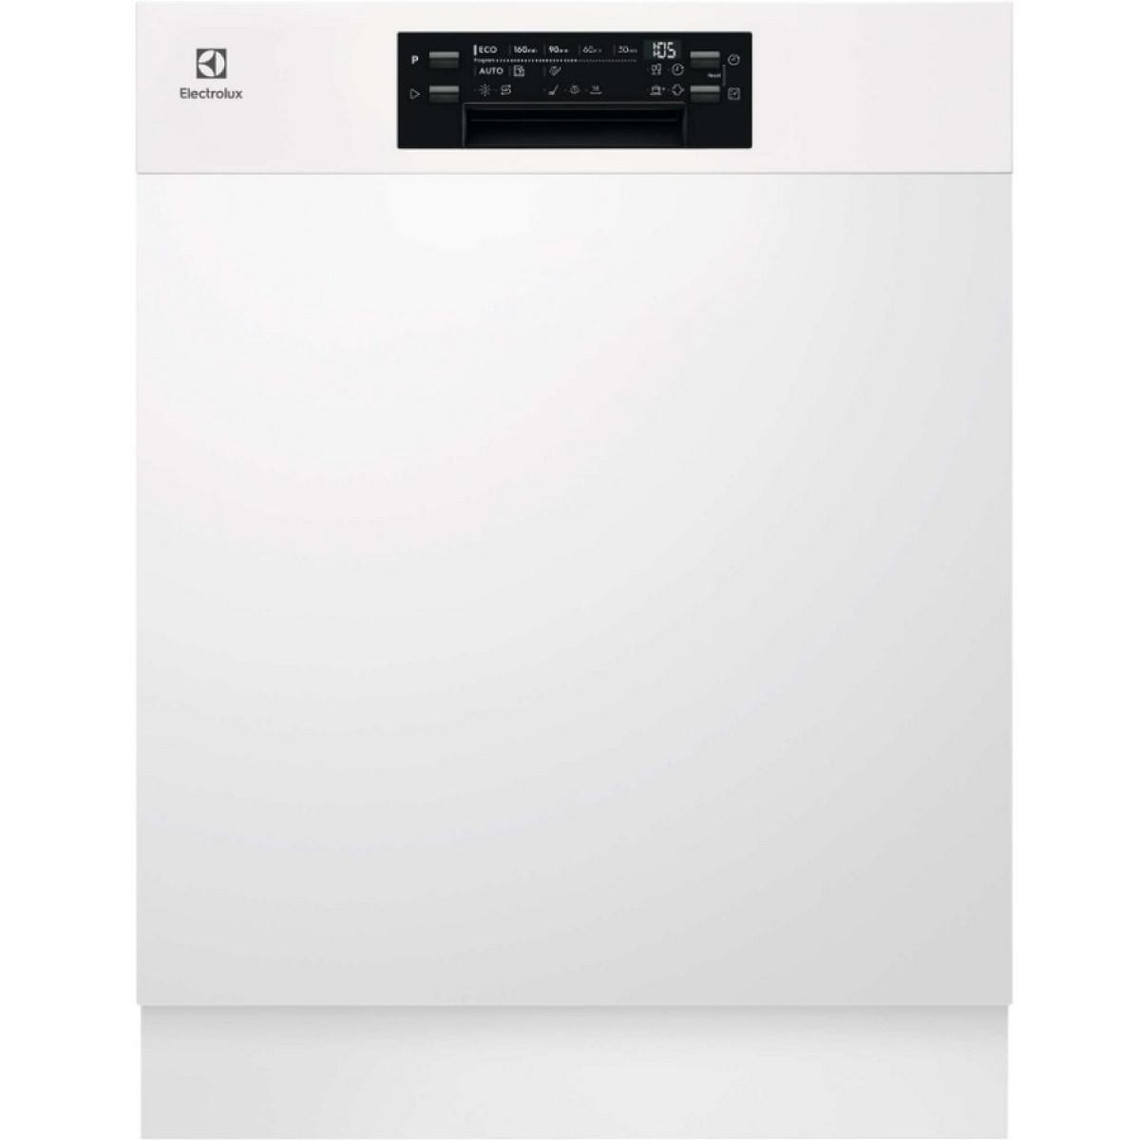 Electrolux Lave-vaisselle 60cm 13c 44db e intégrable avec bandeau blanc - KEAC7200IW - ELECTROLUX